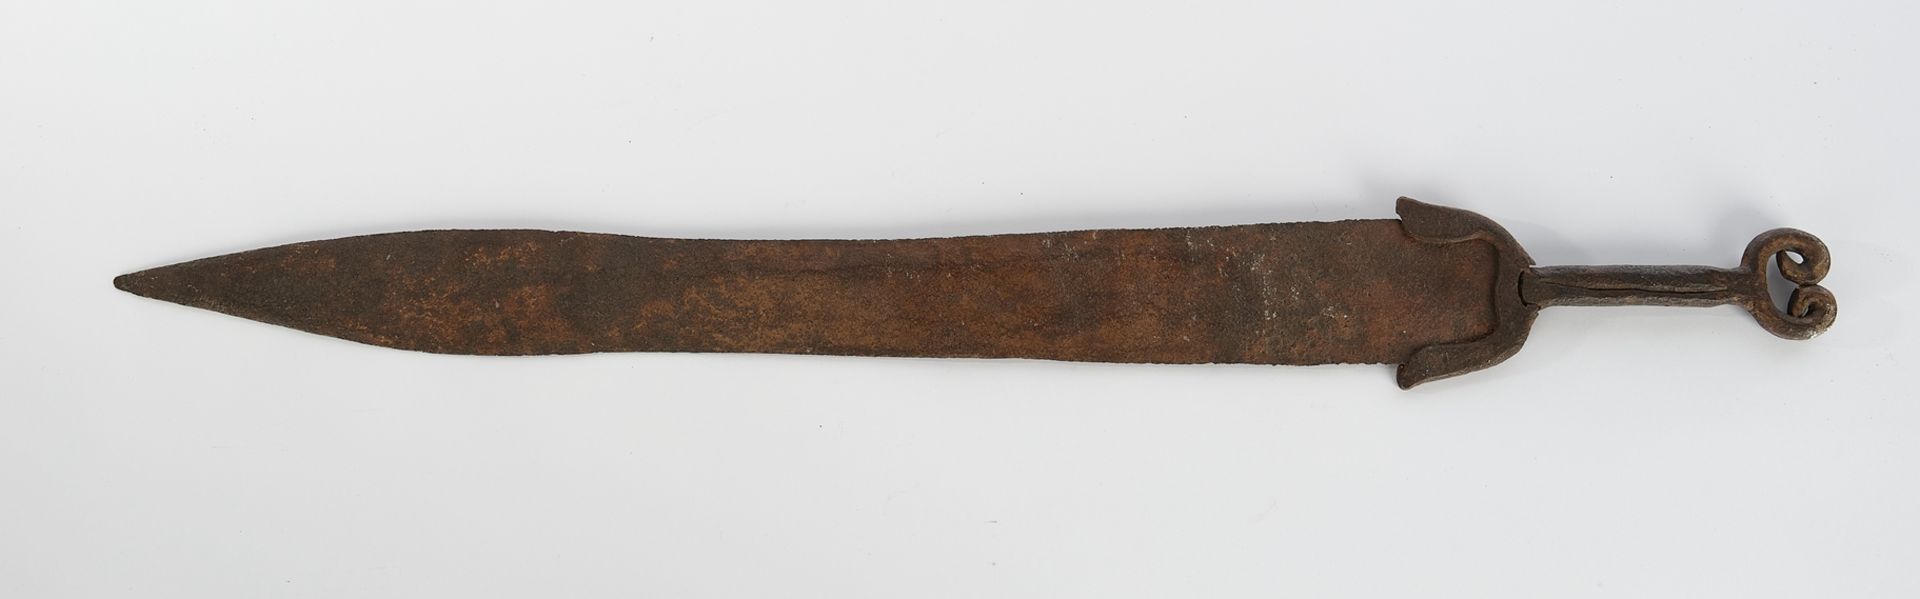 Kurzschwert, "Gladius", zweischneidige Klinge und Heft aus Eisen, 76.5 cm hoch, korrodiert, Alterss - Bild 2 aus 2